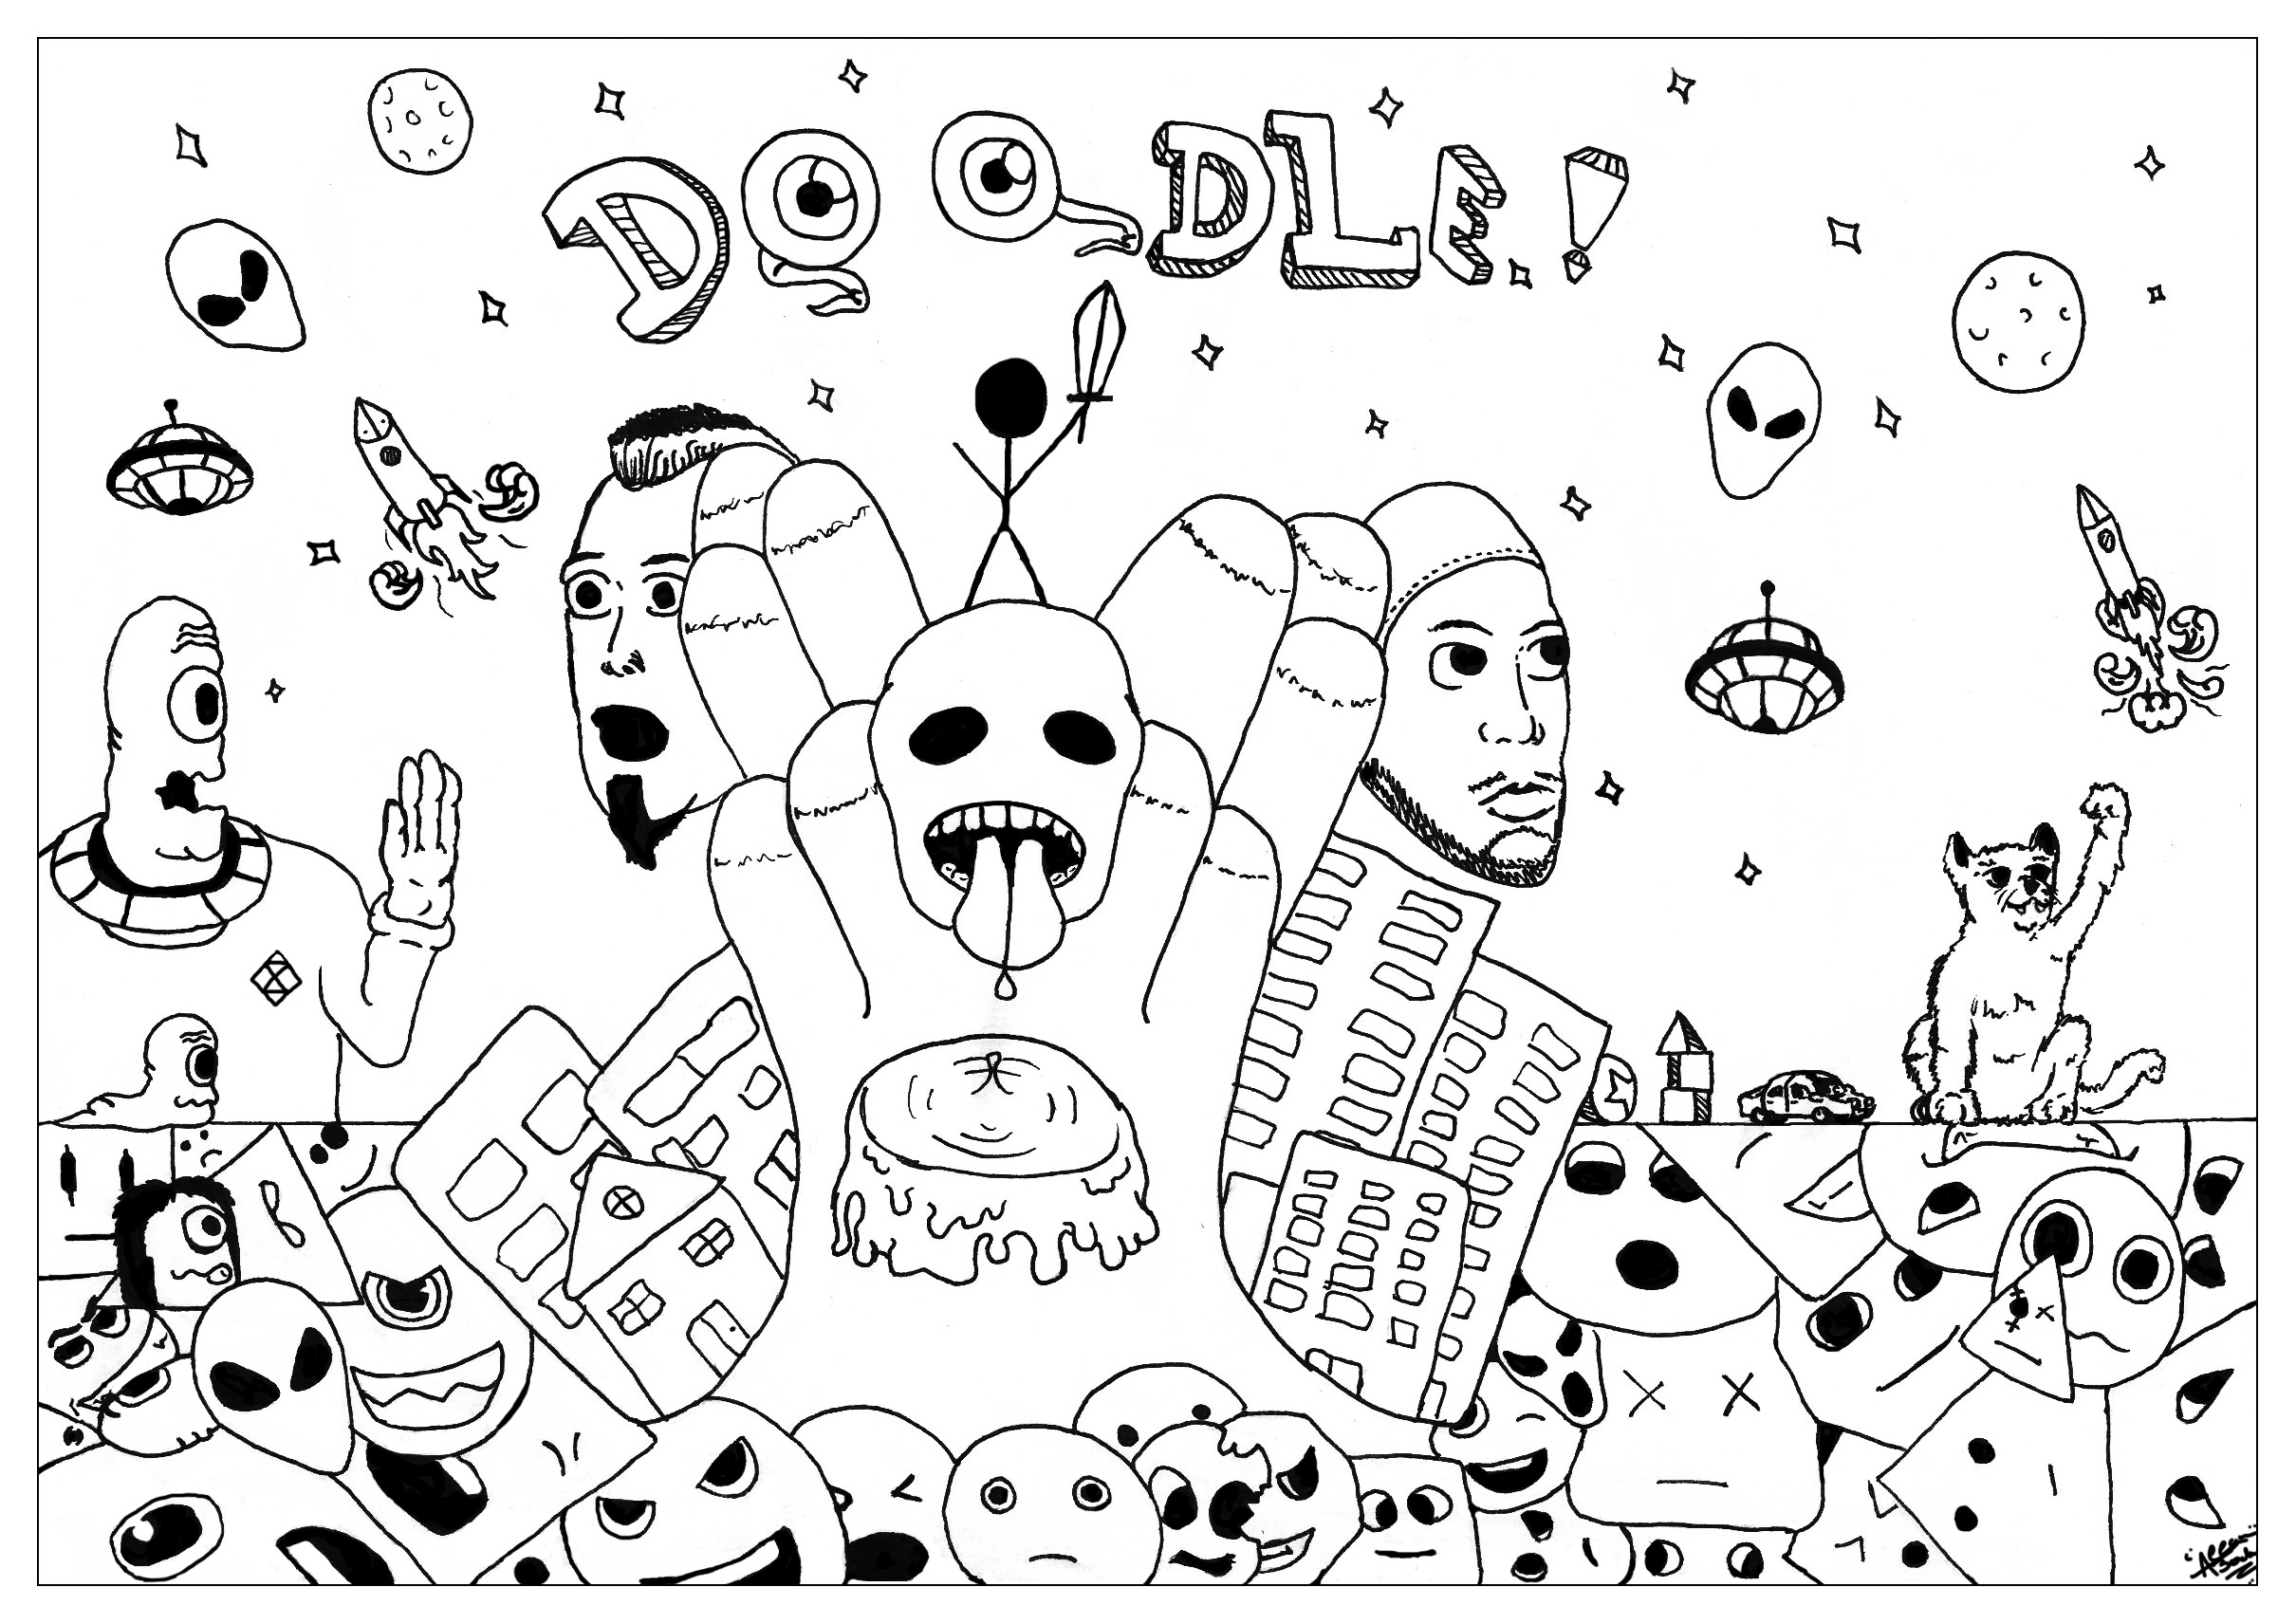 Download Doodle art free to color for kids - Doodle Art Kids ...